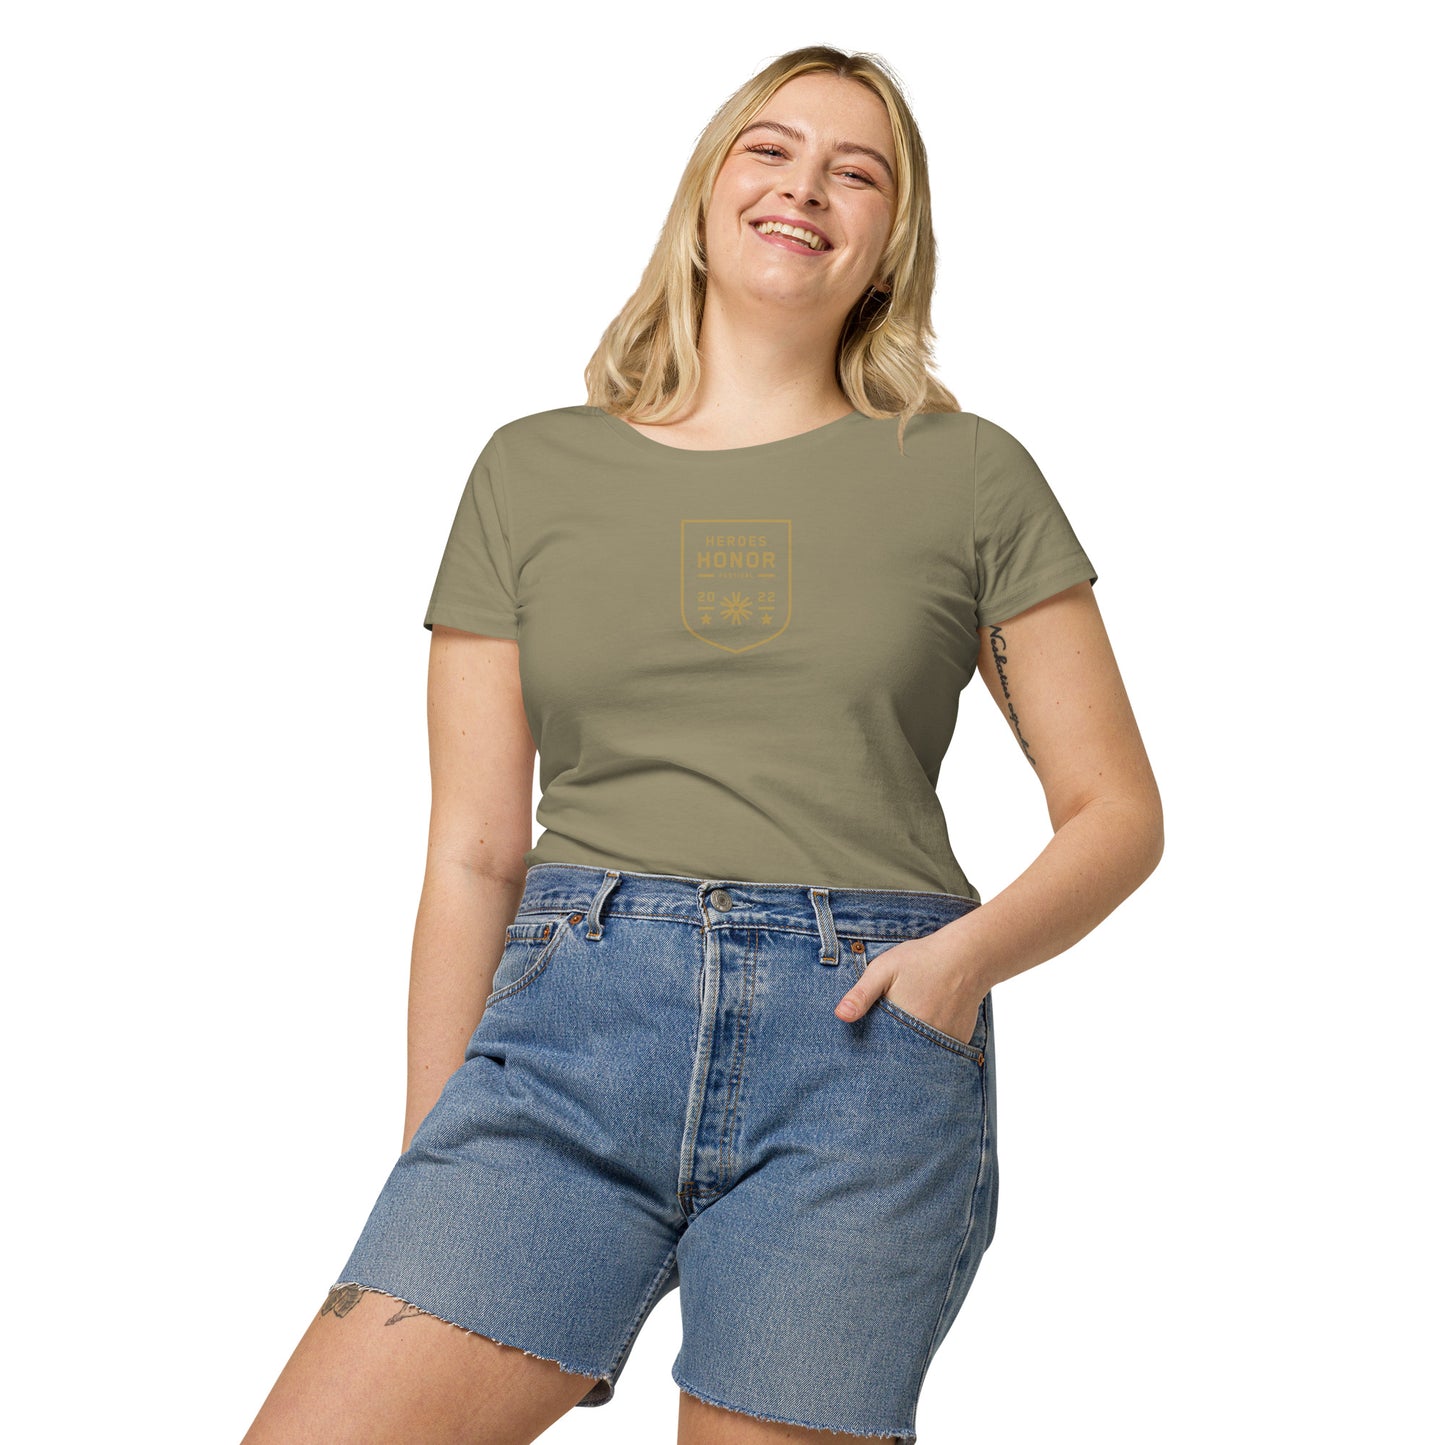 Honor Women’s basic organic t-shirt